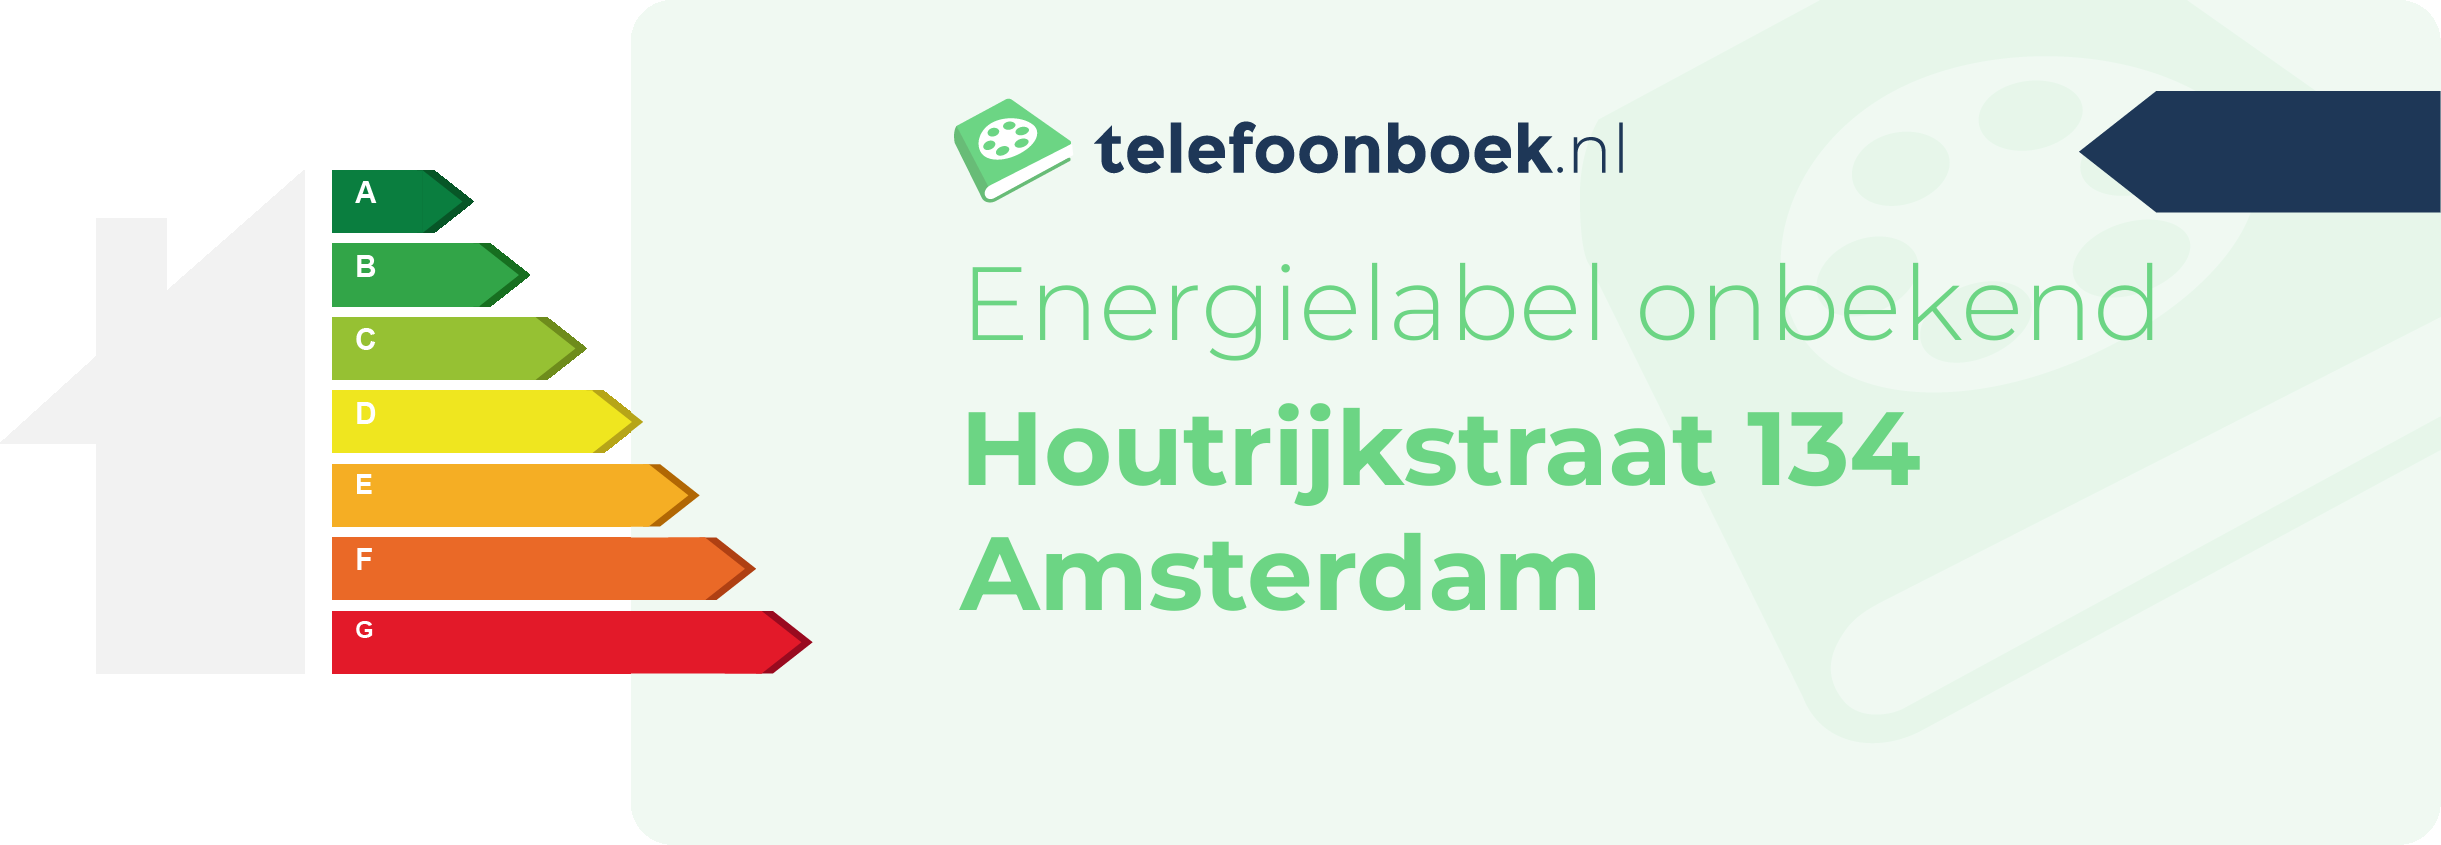 Energielabel Houtrijkstraat 134 Amsterdam